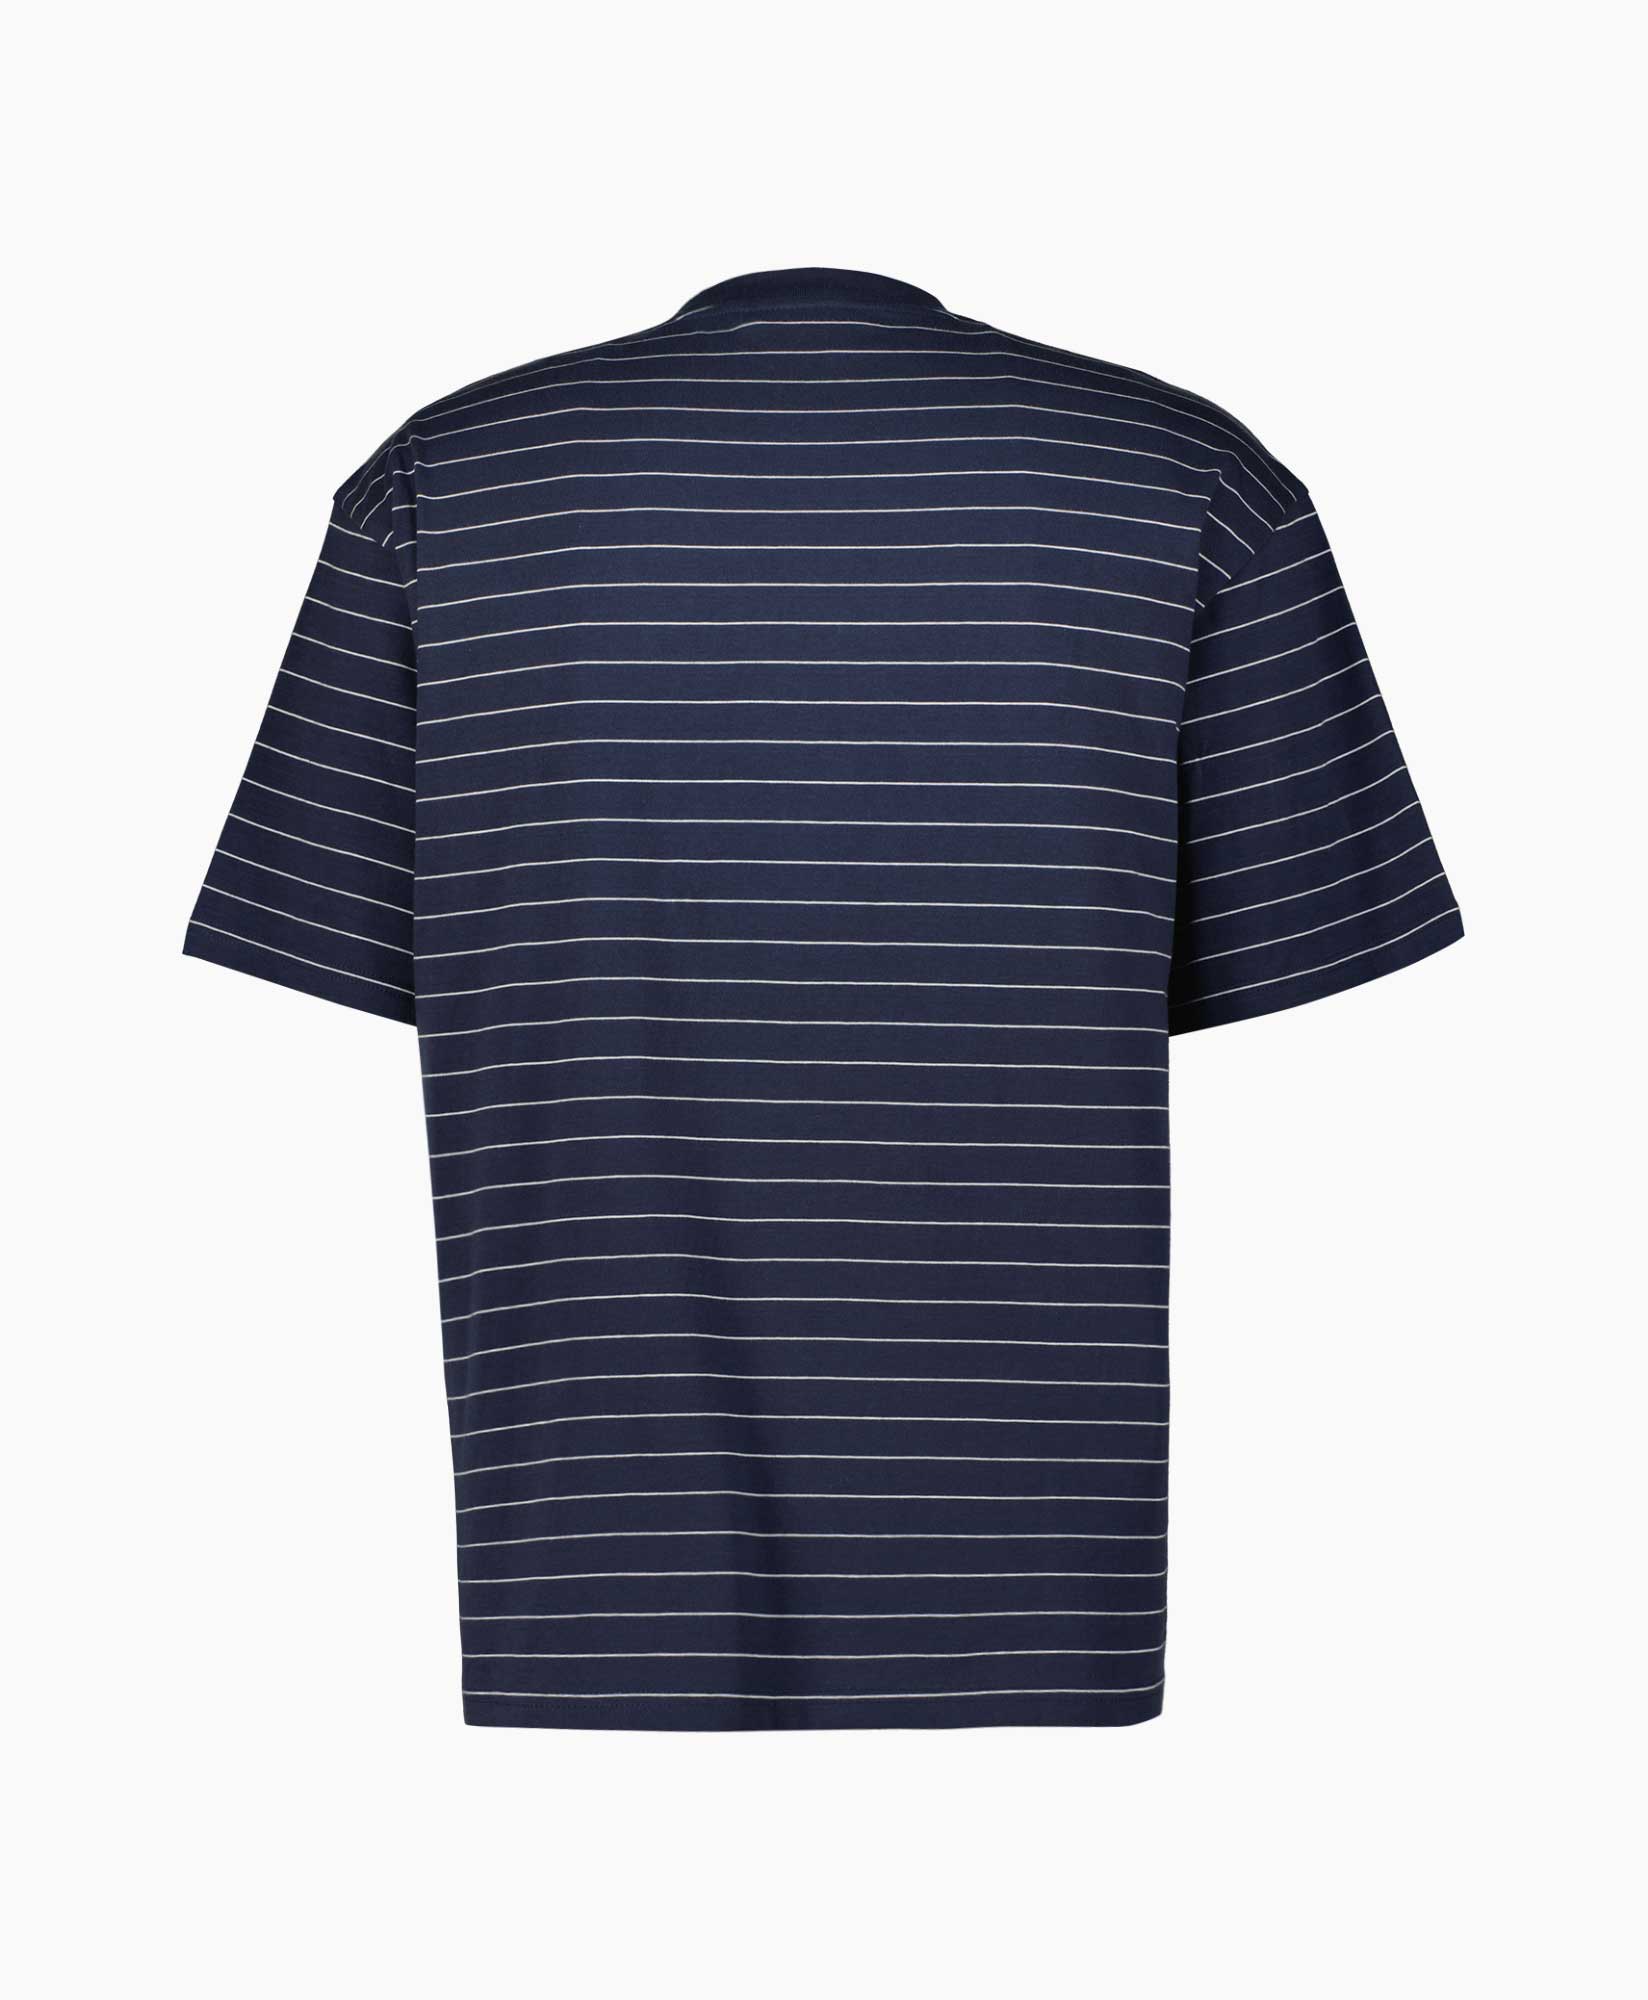 T-shirt S/s Orlean Spree Cotton Blauw